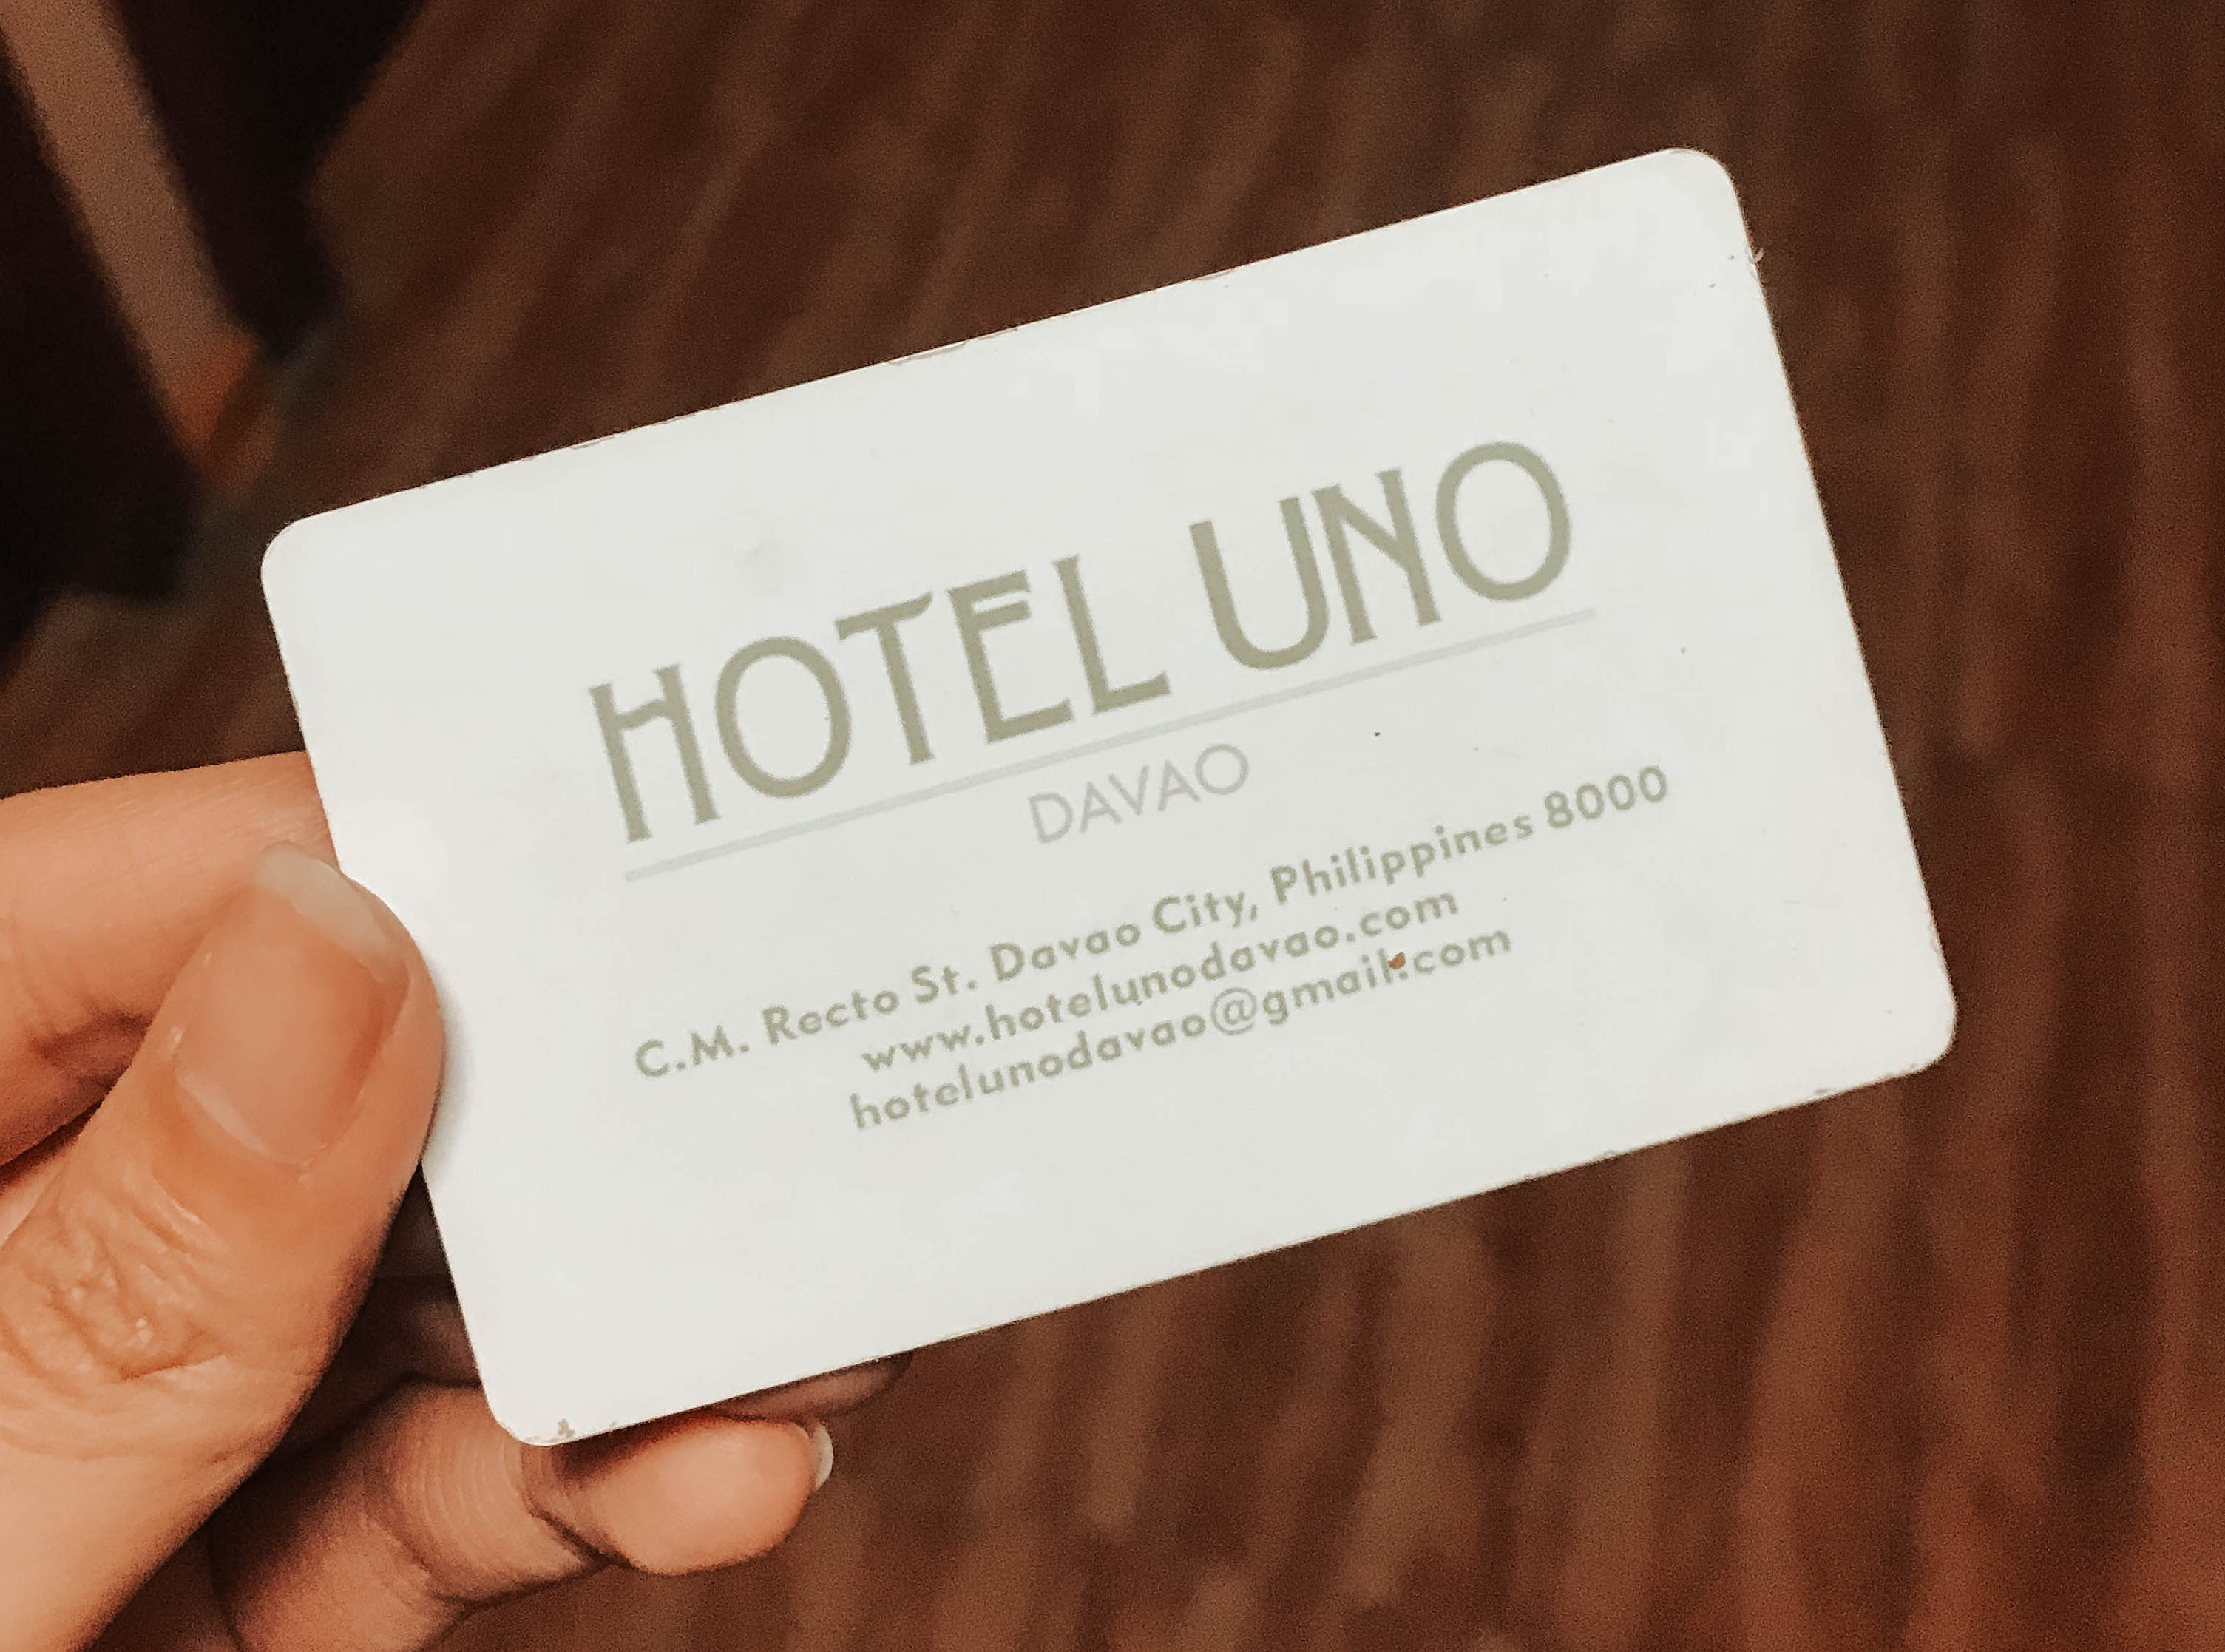 liveloveran-hotel-uno-davao-2017